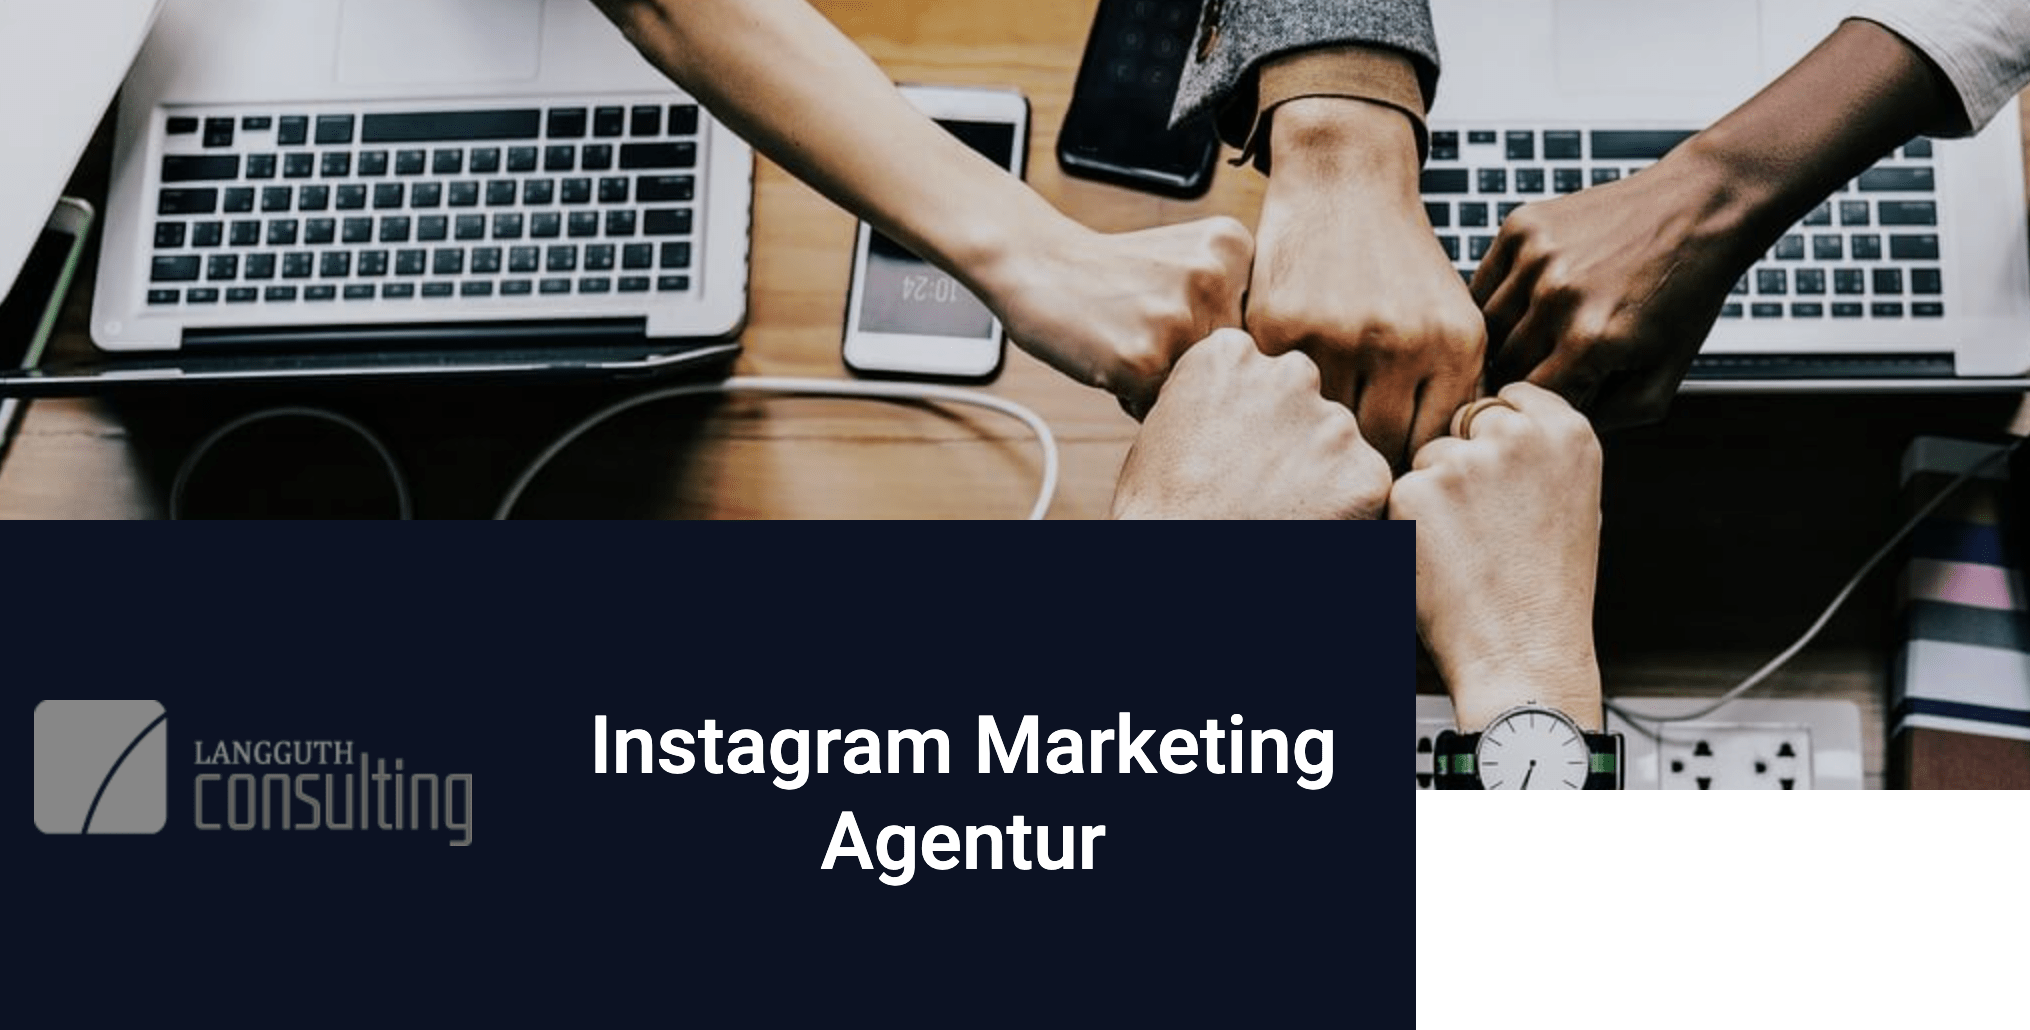 Langguth Consulting: Instagram Marketing Agentur für Behörden und Firmen [Werbung]